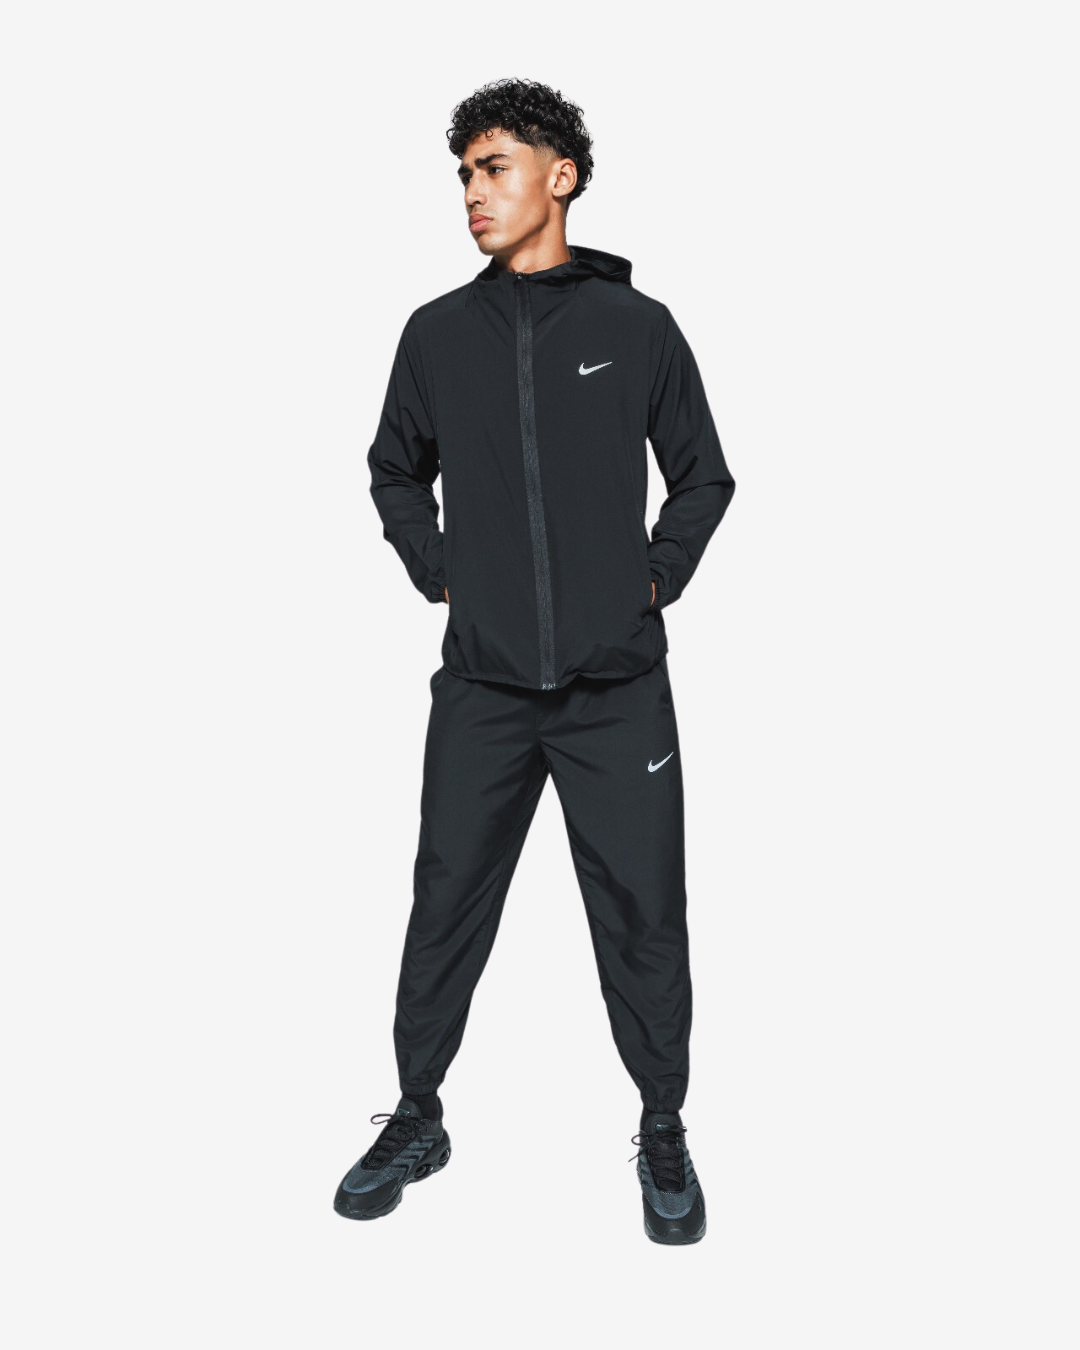 Survêtement Nike Form - Noir